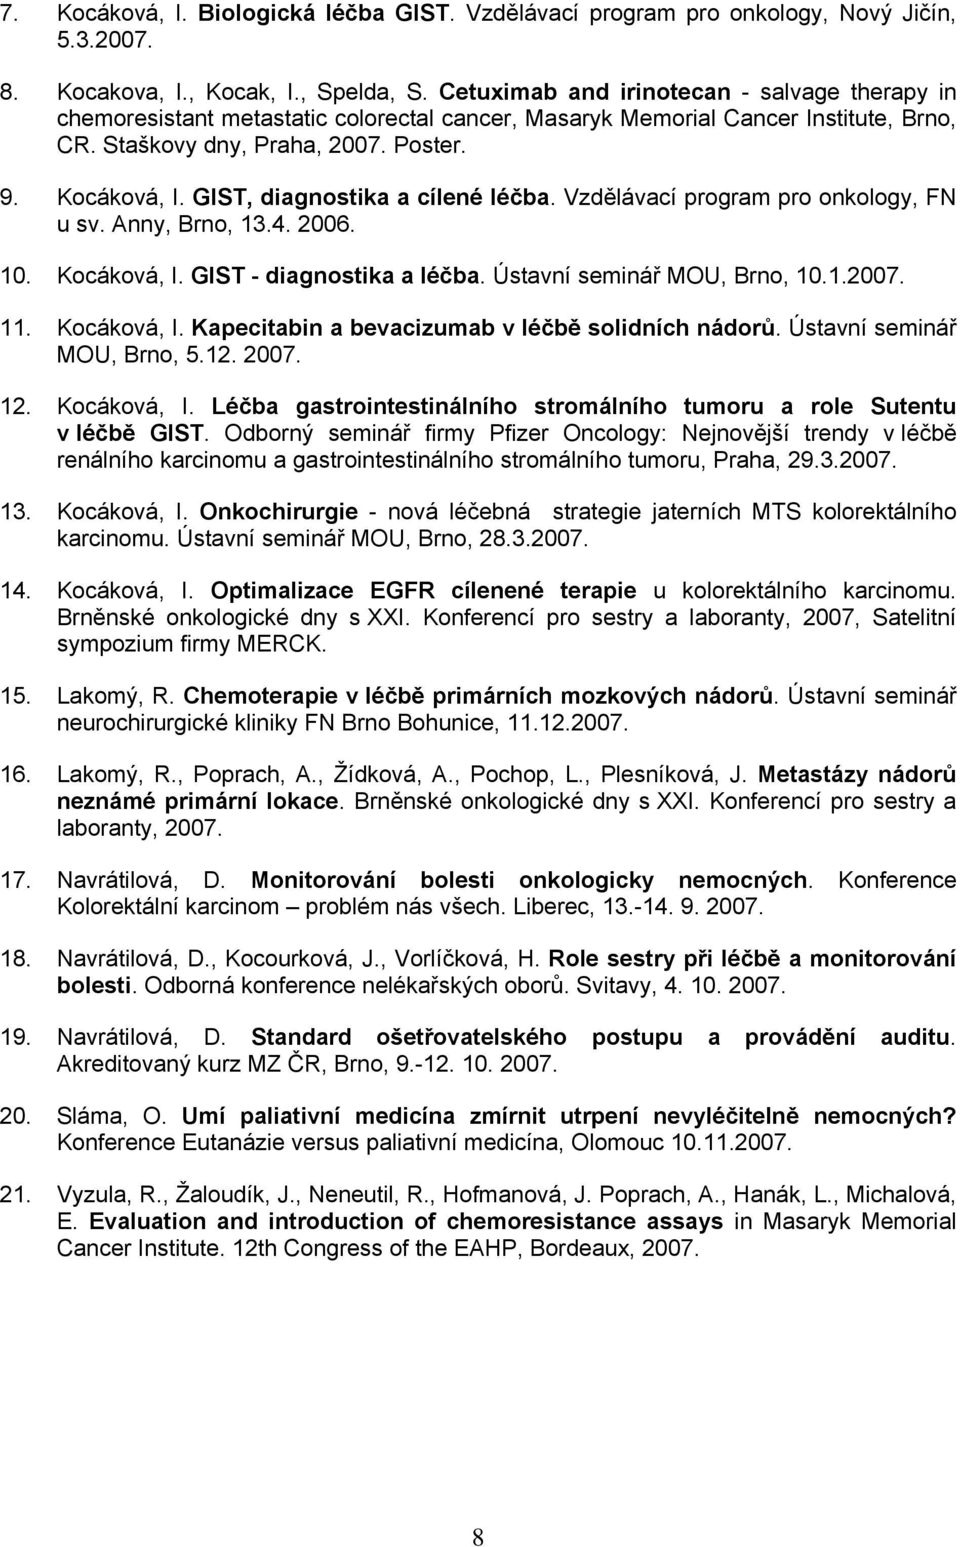 GIST, diagnostika a cílené léčba. Vzdělávací program pro onkology, FN u sv. Anny, Brno, 13.4. 2006. 10. Kocáková, I. GIST - diagnostika a léčba. Ústavní seminář MOU, Brno, 10.1.2007. 11. Kocáková, I. Kapecitabin a bevacizumab v léčbě solidních nádorů.